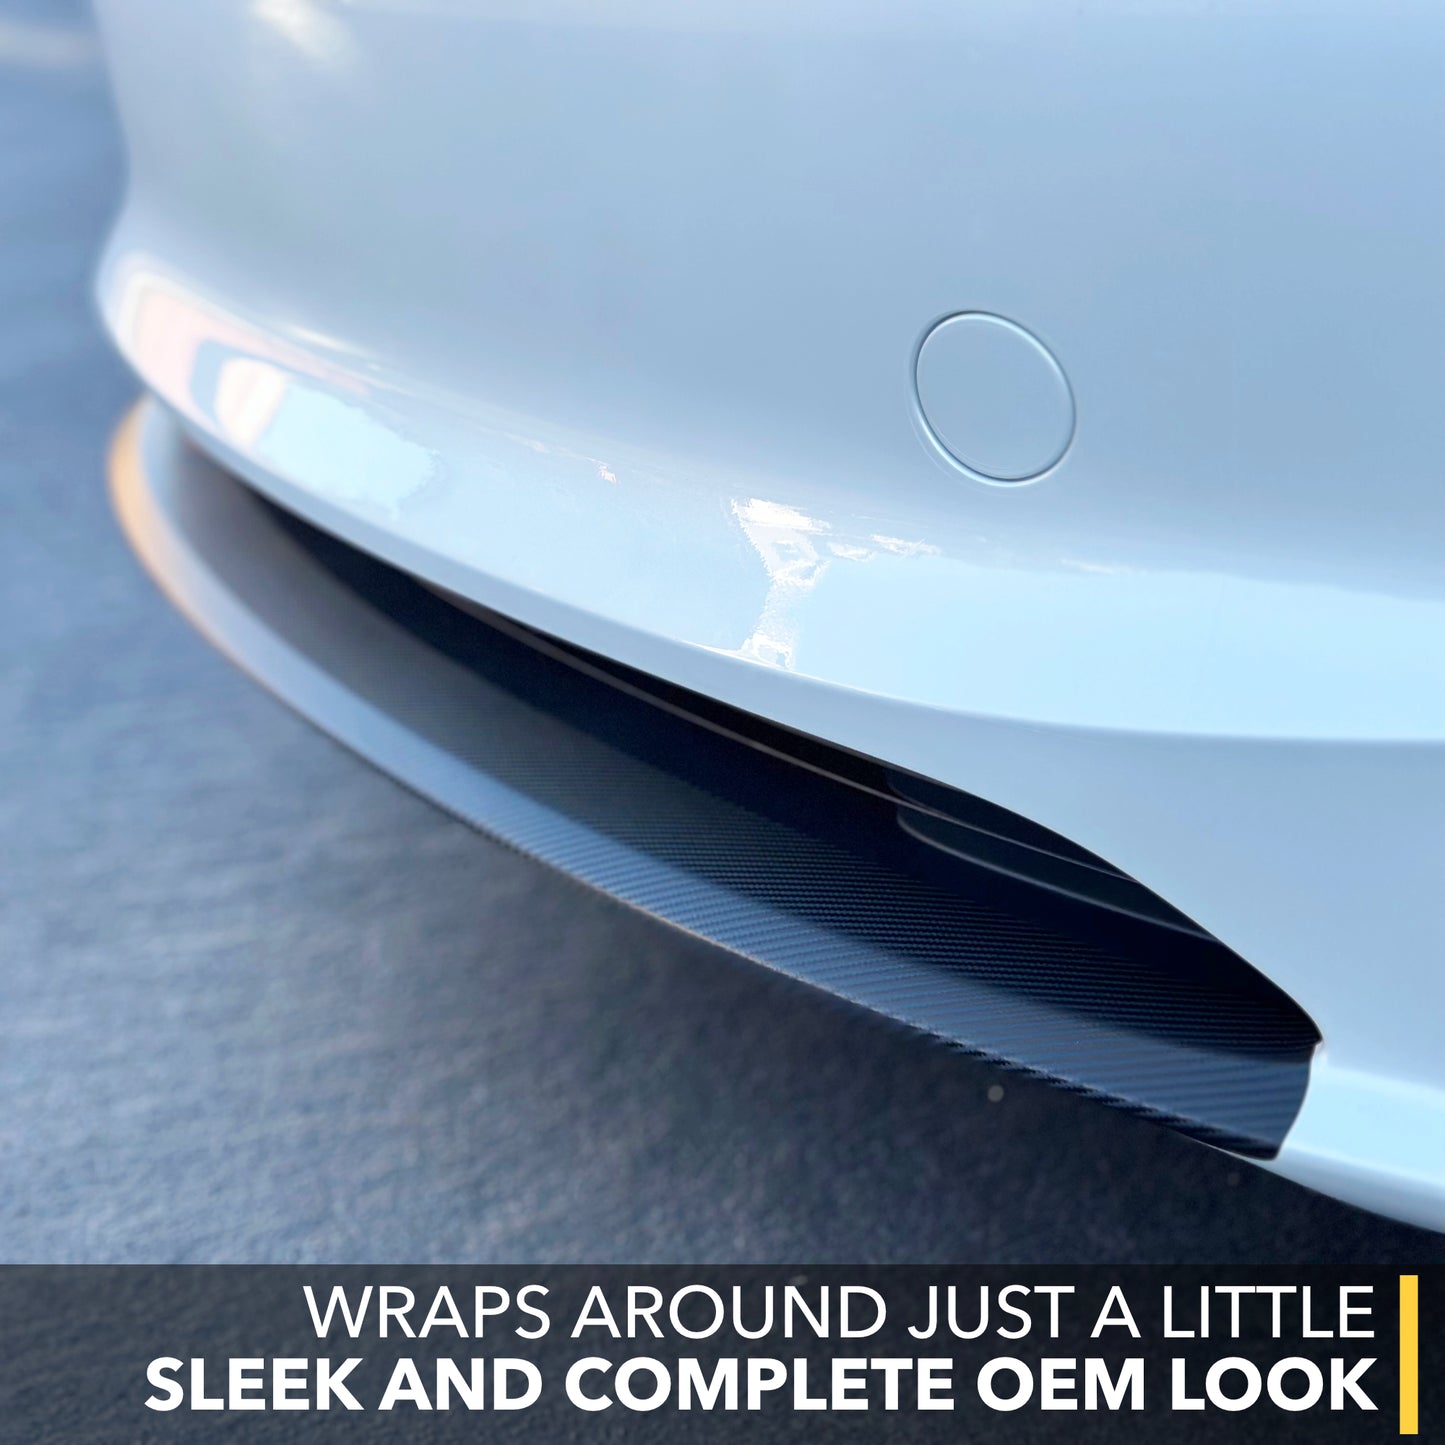 Front Lip Vinyl Wrap for Tesla Model 3 Highland - Carbon Fiber Film Cover